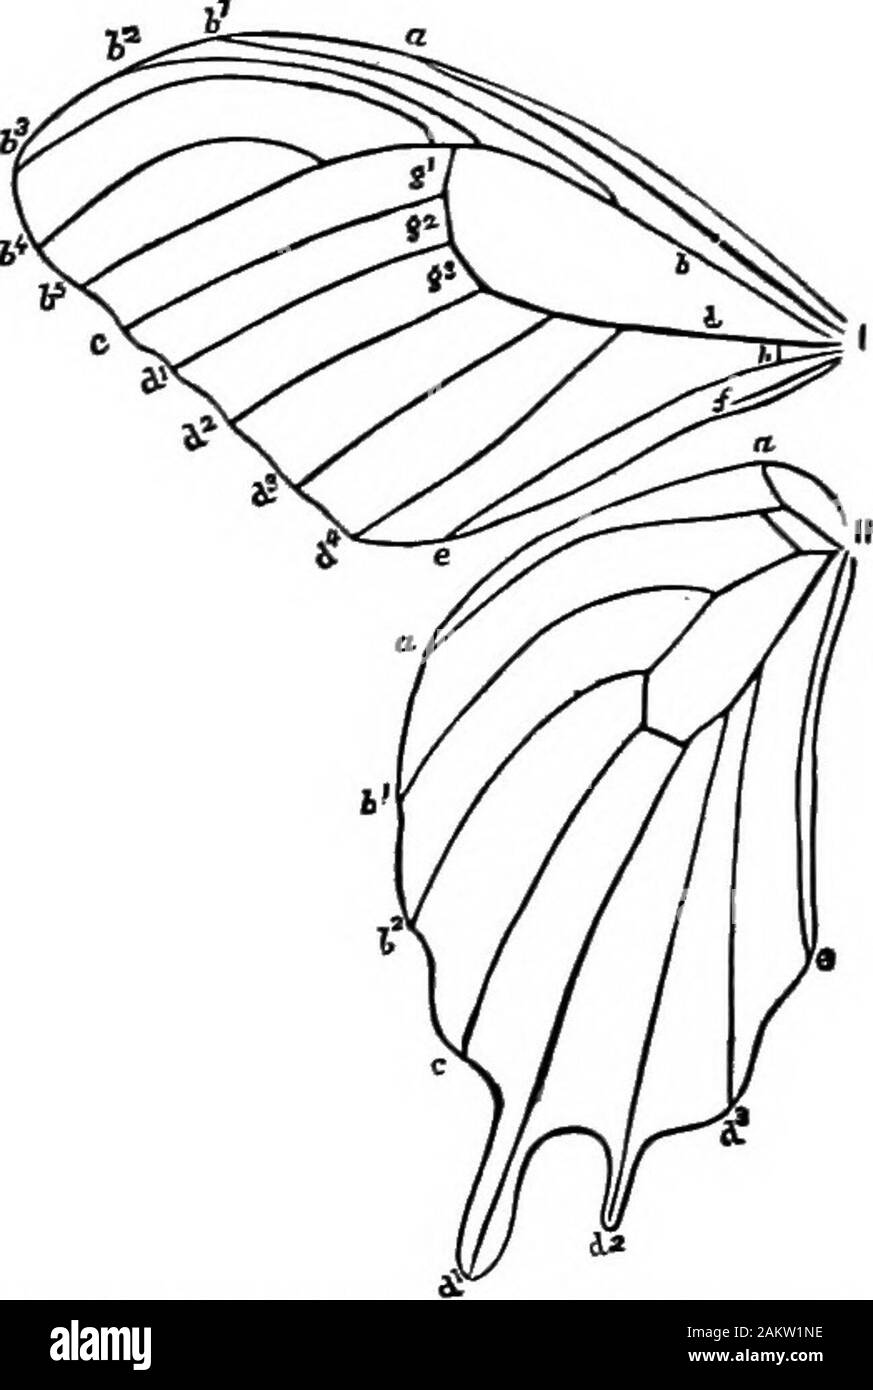 Prima lezione di zoologia : adatta per l'uso nelle scuole . Fig. 129.-Sectinii della linguetta butterflys, due maxiitse unire per formare thefood-passaggio c; &LT;r, trachea; n, nervi; m, i muscoli di un lato. (Ingrandita125 volte.) Archippus butterfly. Questo rappresenta in una vista frontale la testa: cl è la parte anteriore o la visiera e Ih indica l'upperlip; tk è la linguetta, tagliato per mostrare il tubo nella metà dle. Un idea di come funziona può essere vista osservando BUTTERFLY ANB ALTRI 8GALT-WINQBD insetti. 119 Fig. 139, che rappresenta una vista in sezione di quella di Da-nais butterfly. Il maxillae in alcune falene, ad un Foto Stock